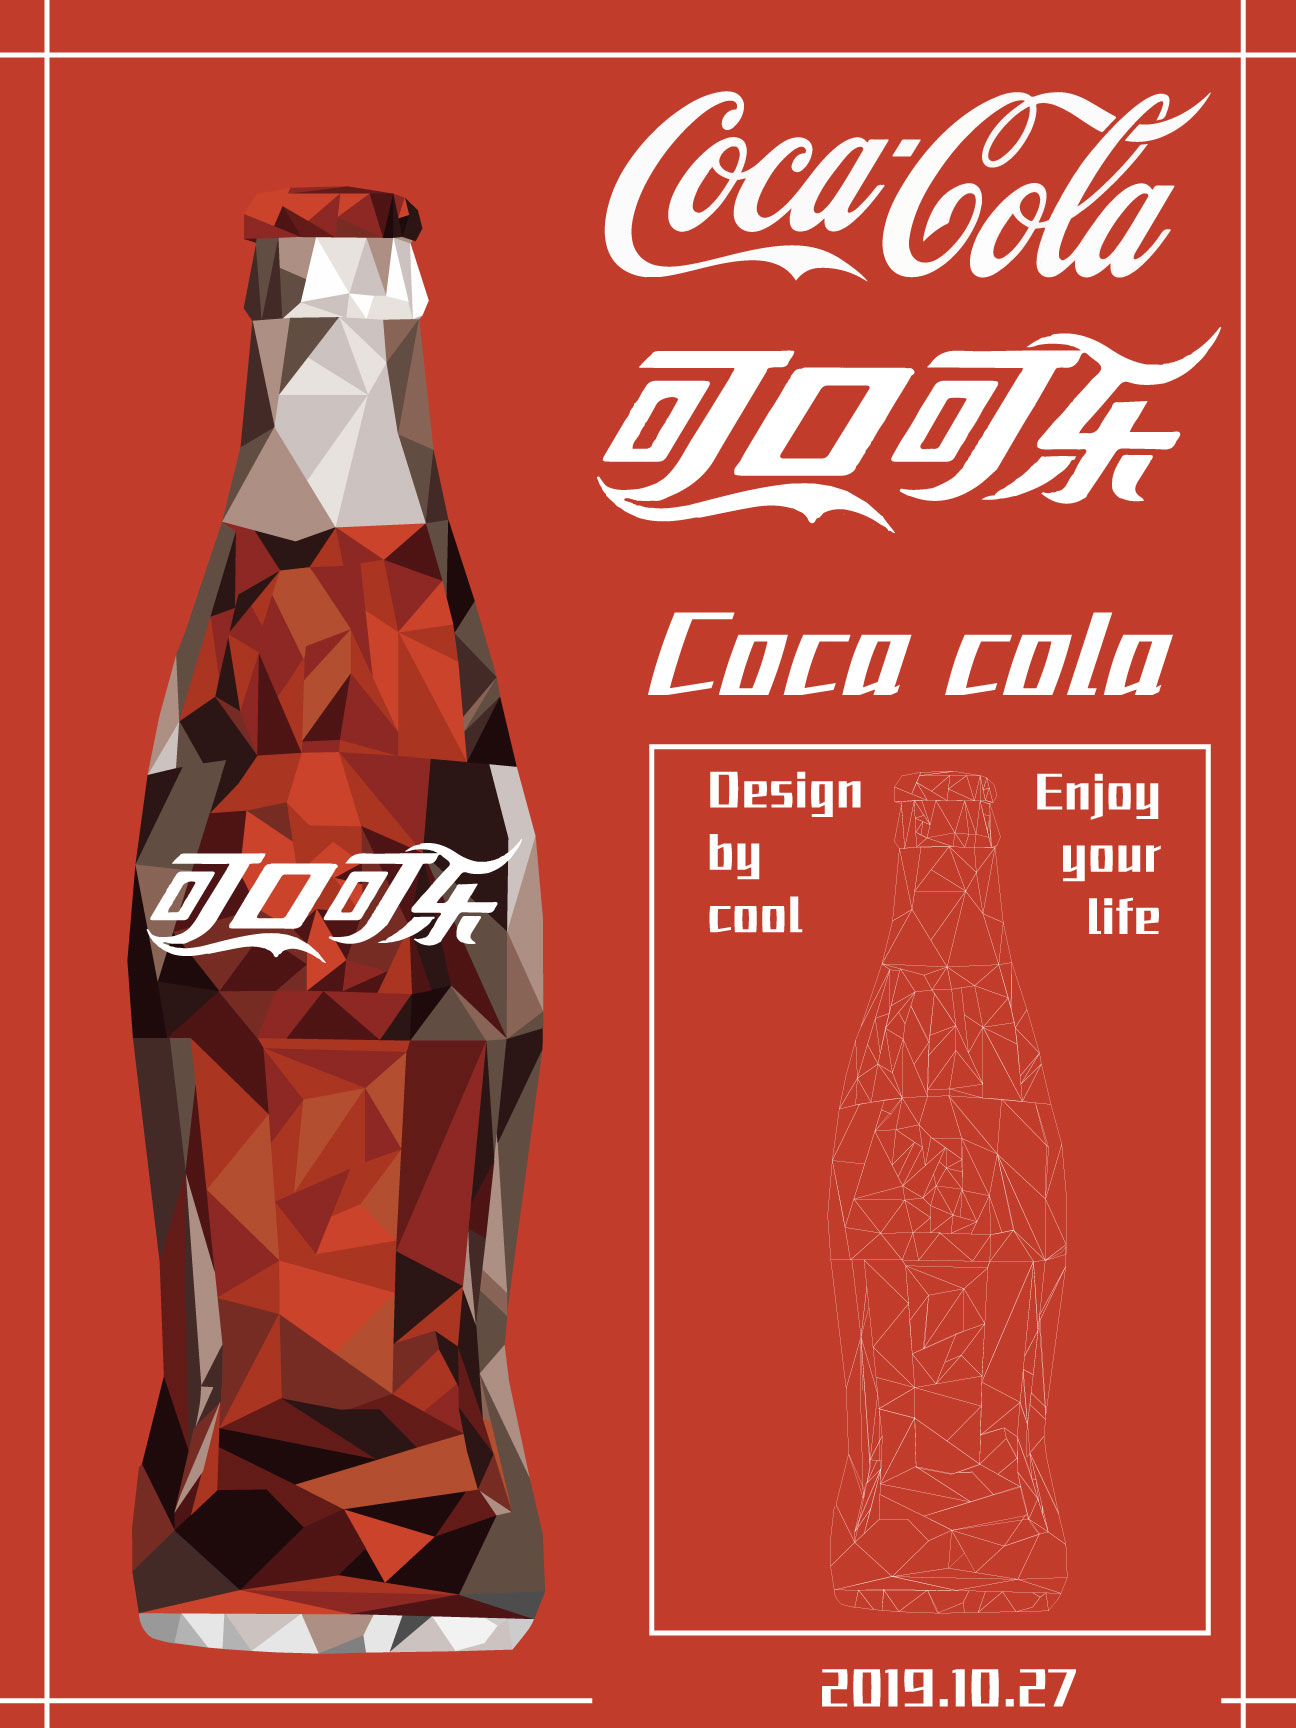 可口可乐平面广告图片